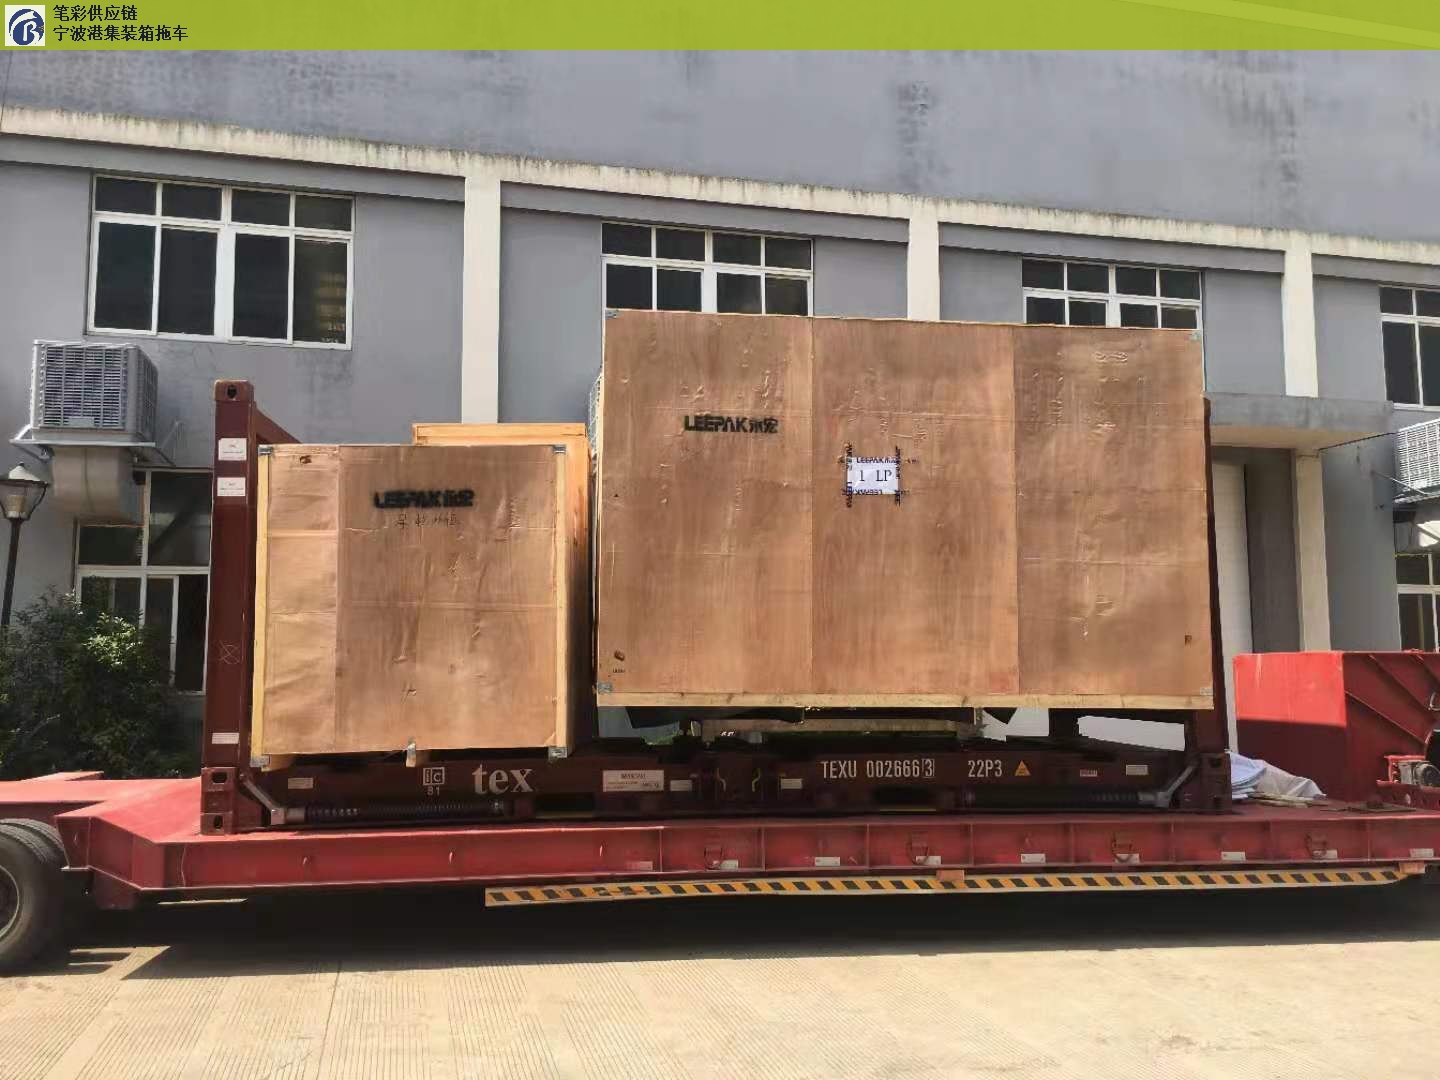 杭州进出口集装箱拖车车队,集装箱拖车